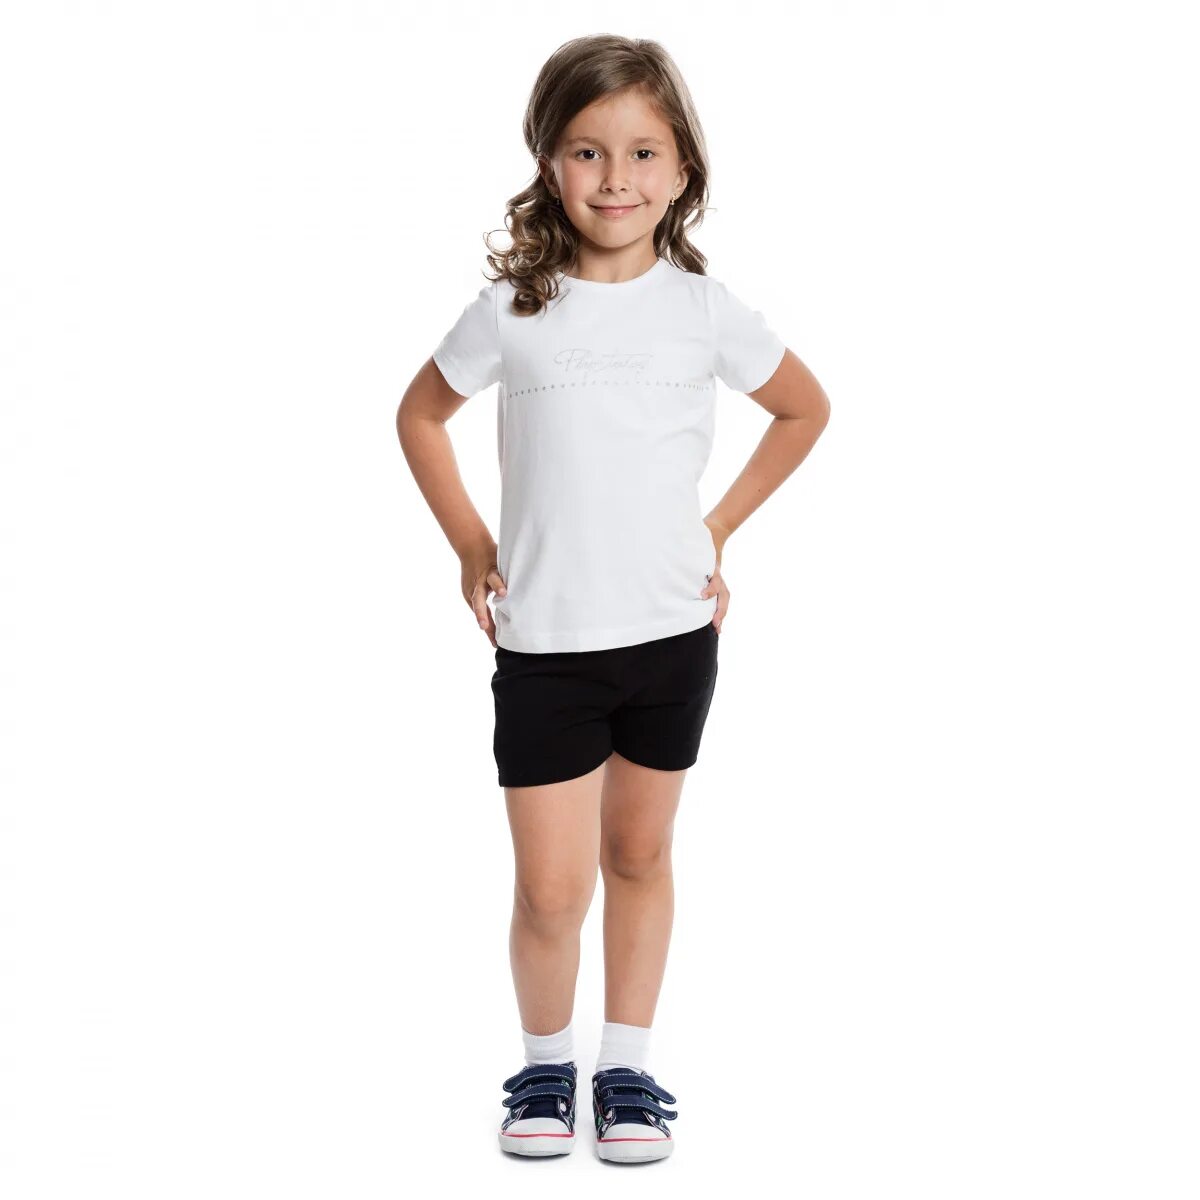 Форма шорты и футболка. Спортивная форма белая футболка и черные шорты. Белая футболка и черные шорты. Физкультурная форма для девочек. Спортивная форма для первоклассника.